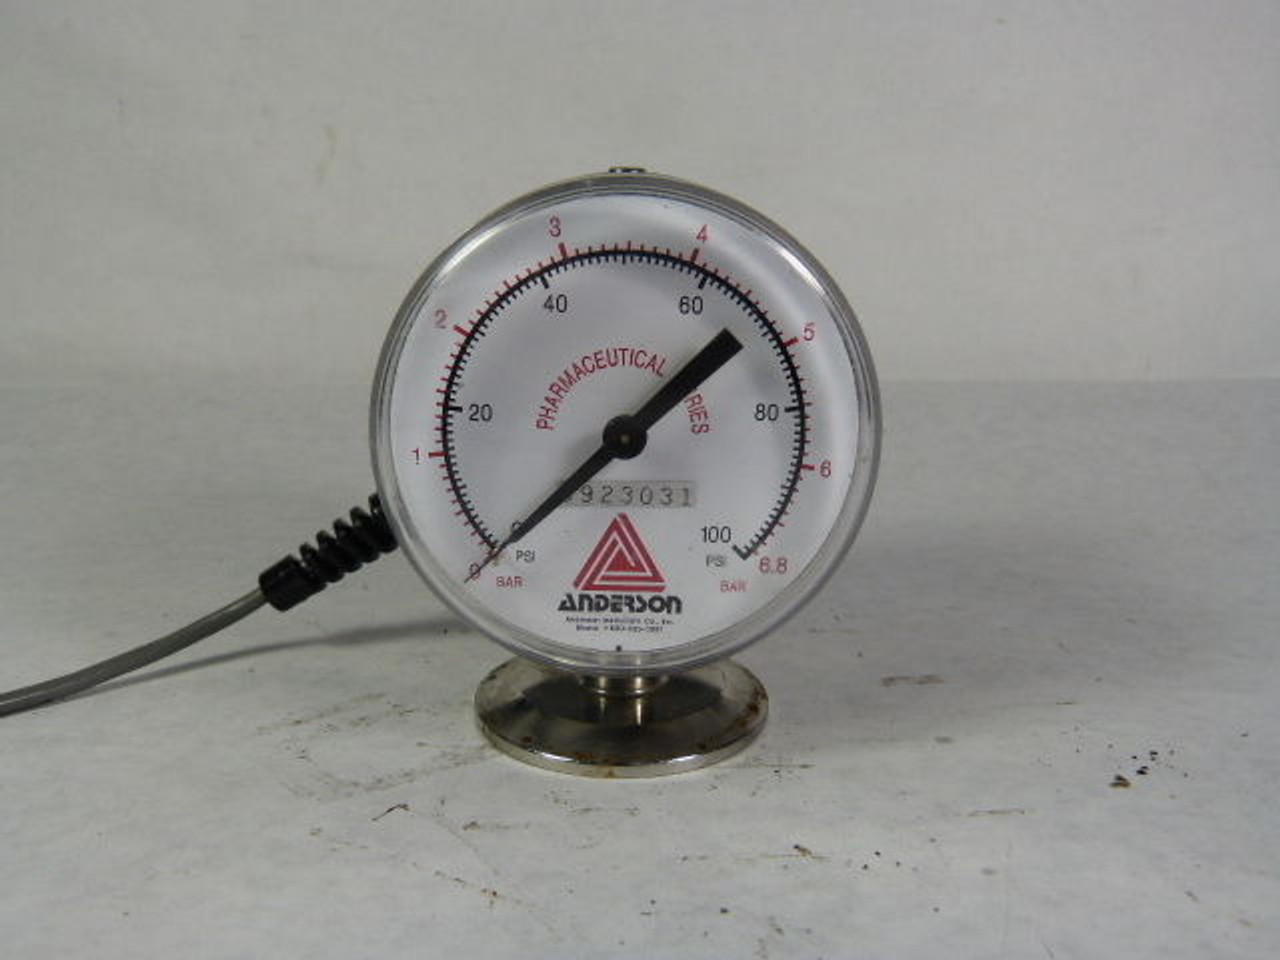 Anderson Series 0-6.8 psi Pressure Gauge USED